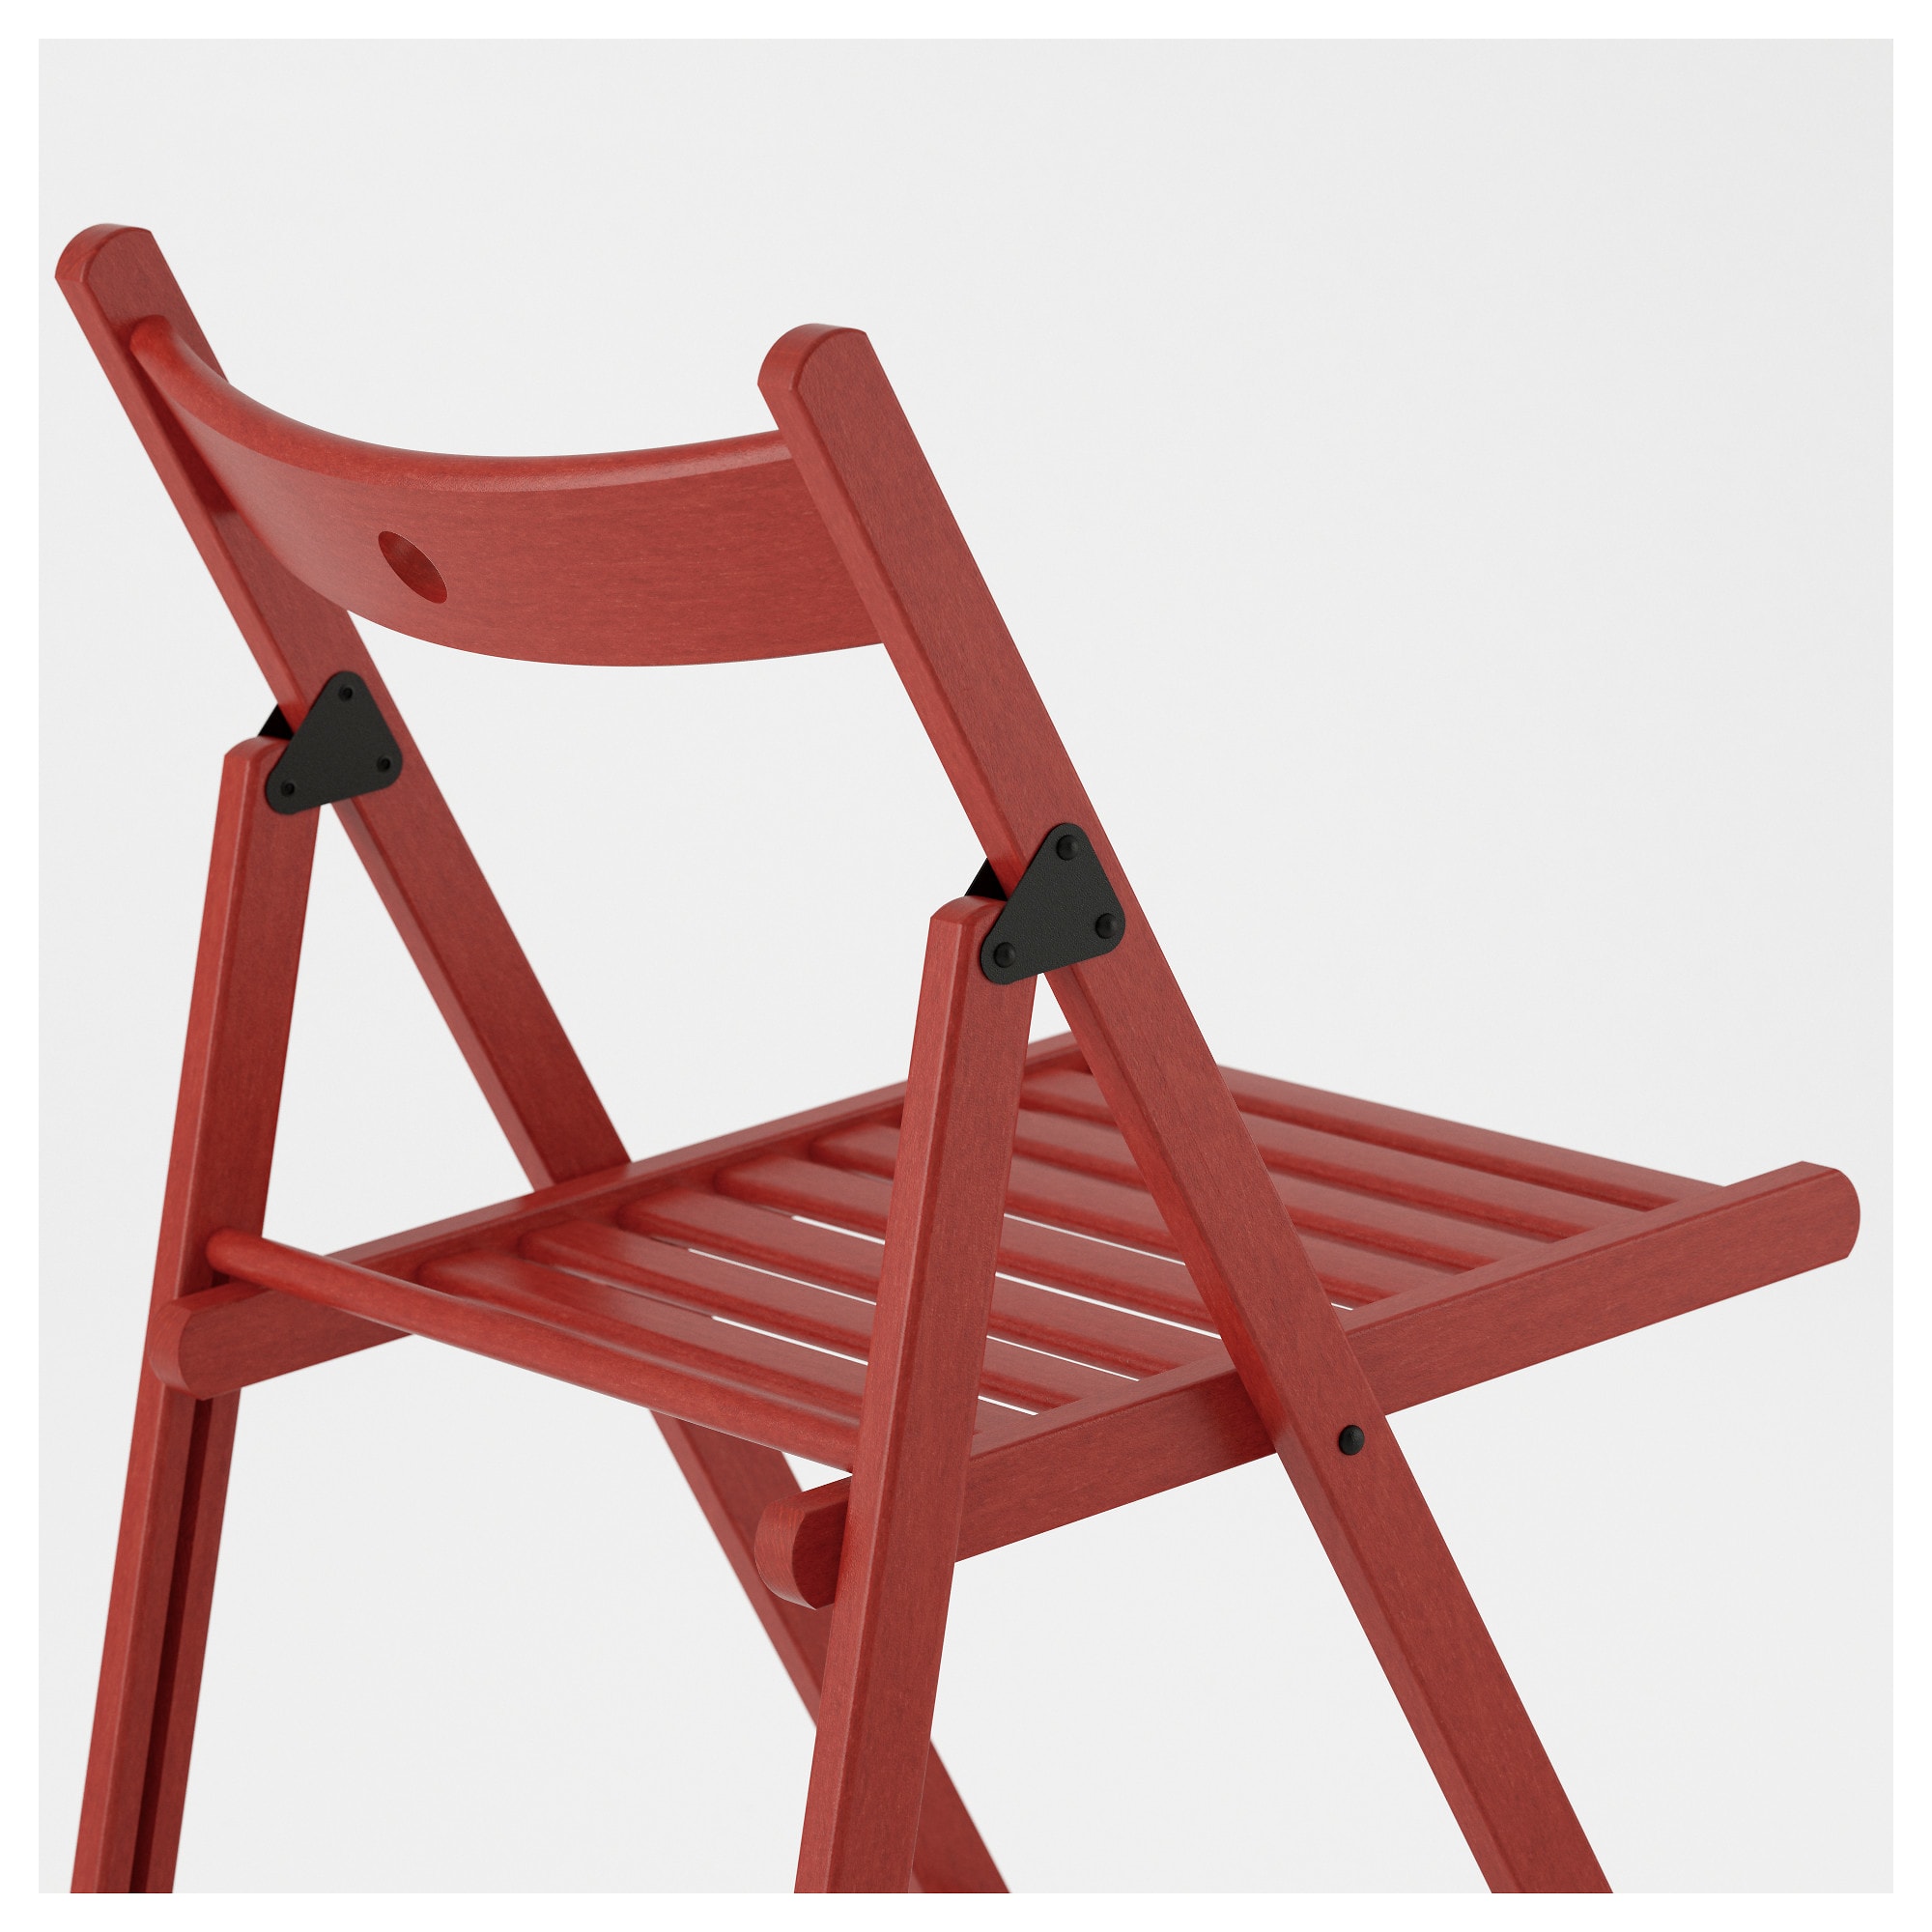 TERJE Folding chair - IKEA